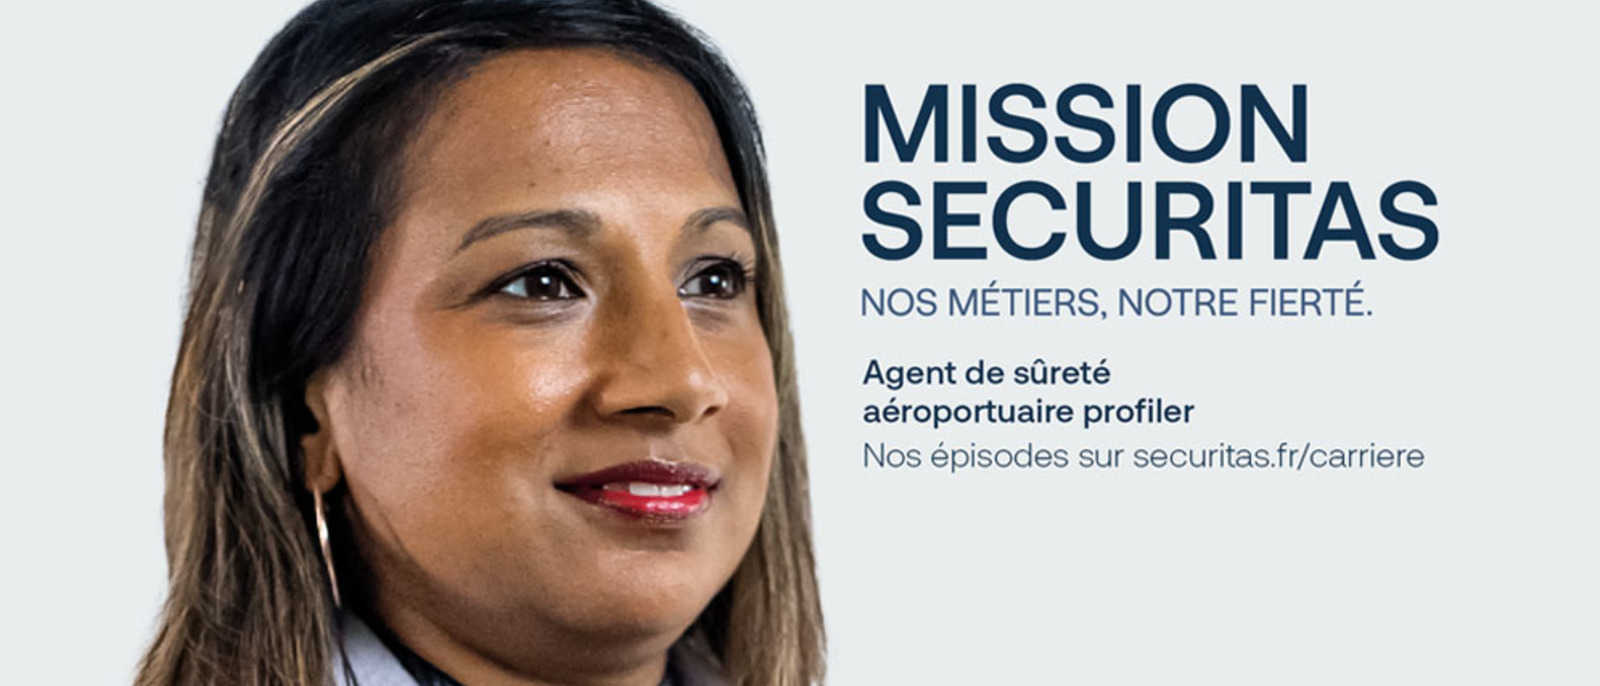 Mission Securitas : dans le quotidien d’un agent de sûreté aéroportuaire profiler 